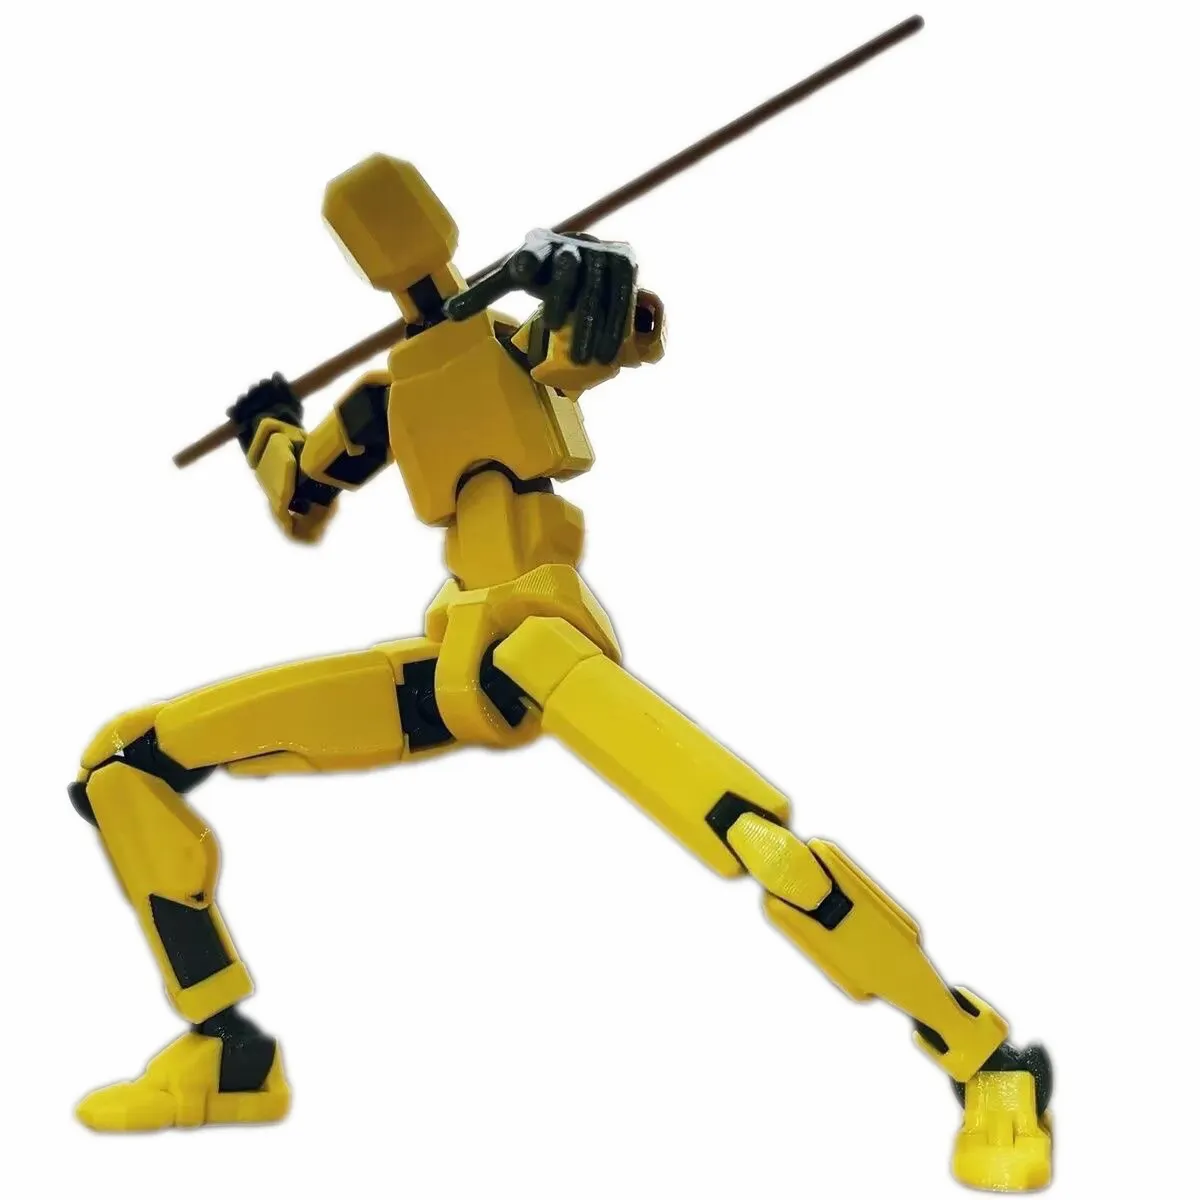 Figura de ação T13 multiarticular móvel, robô estampado em 3D com articulação completa